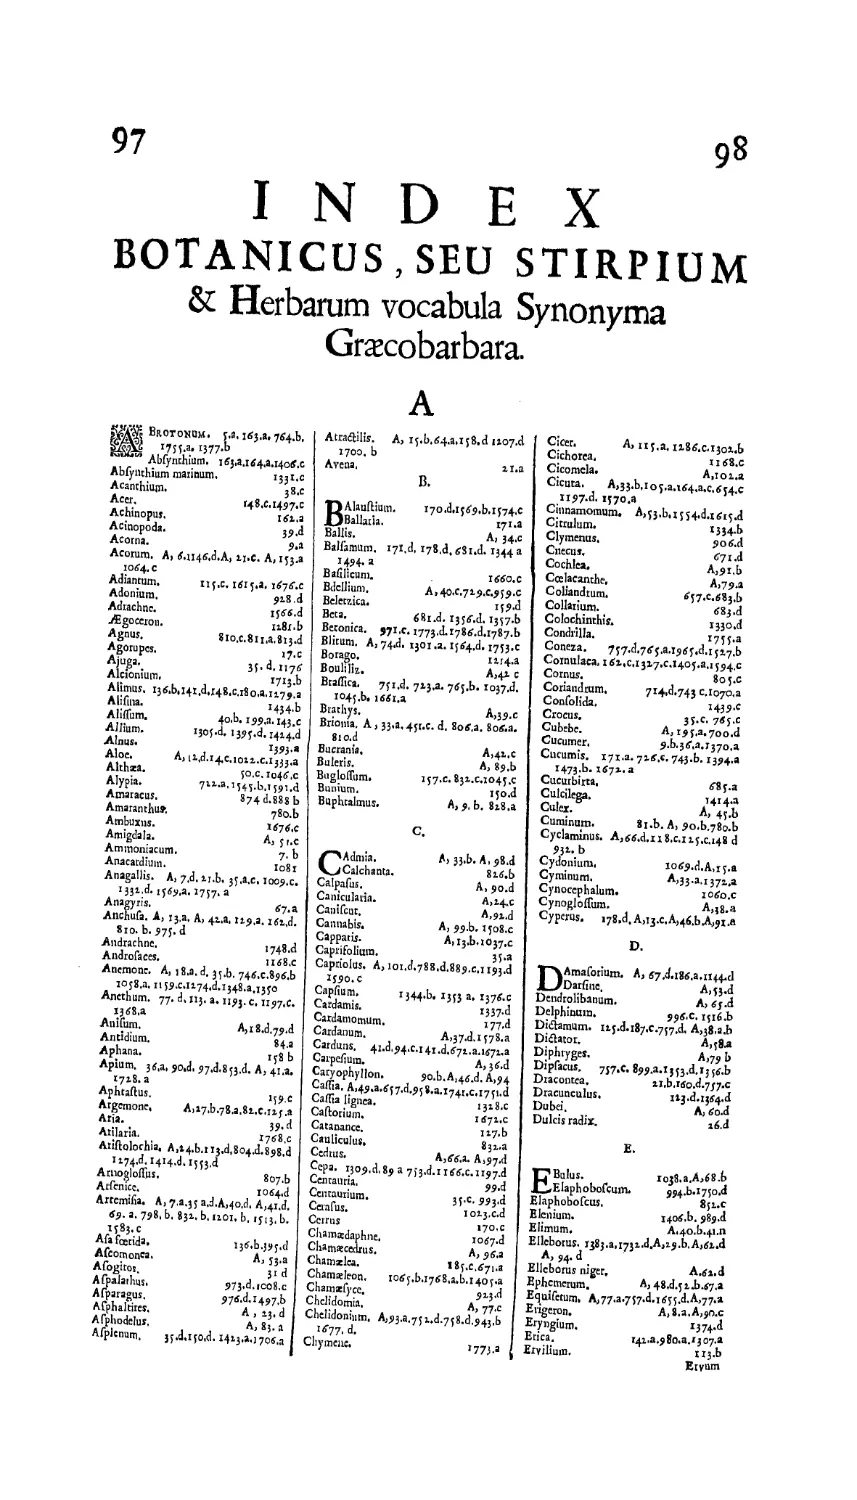 Index botanicus
Index botanicus